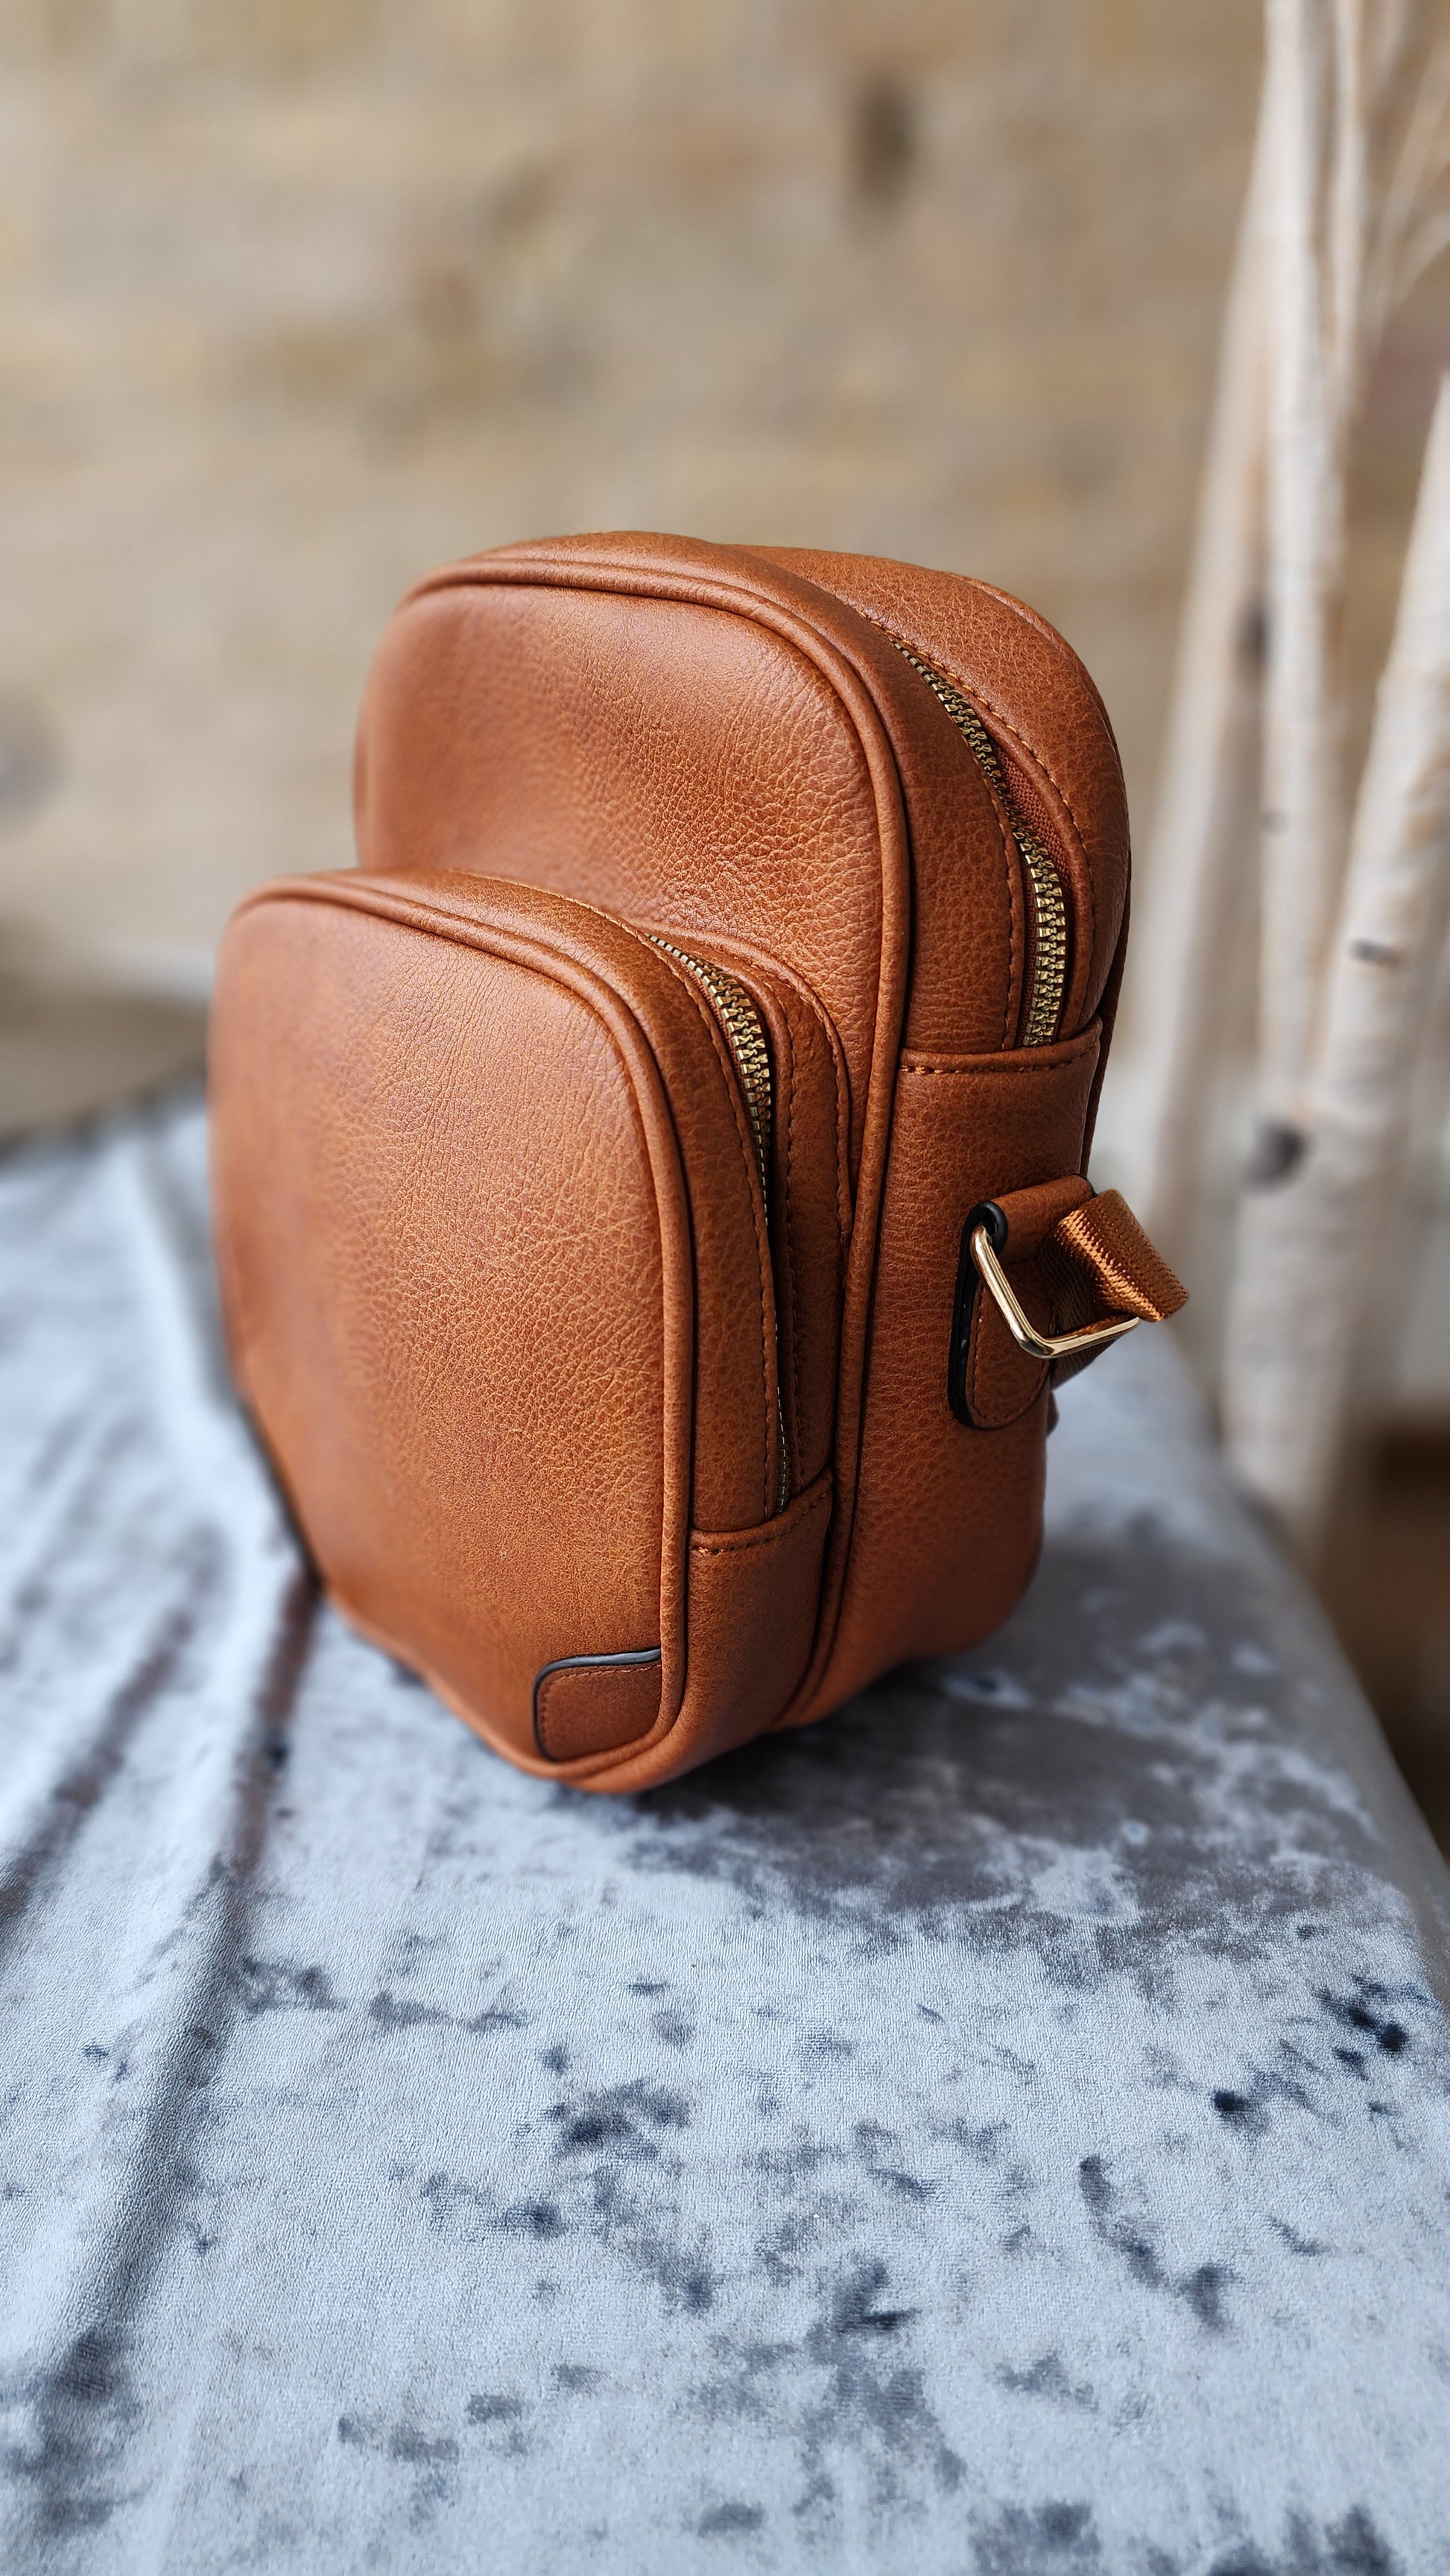 dahlia crossbody bag everyday essential handbag casual style boutique